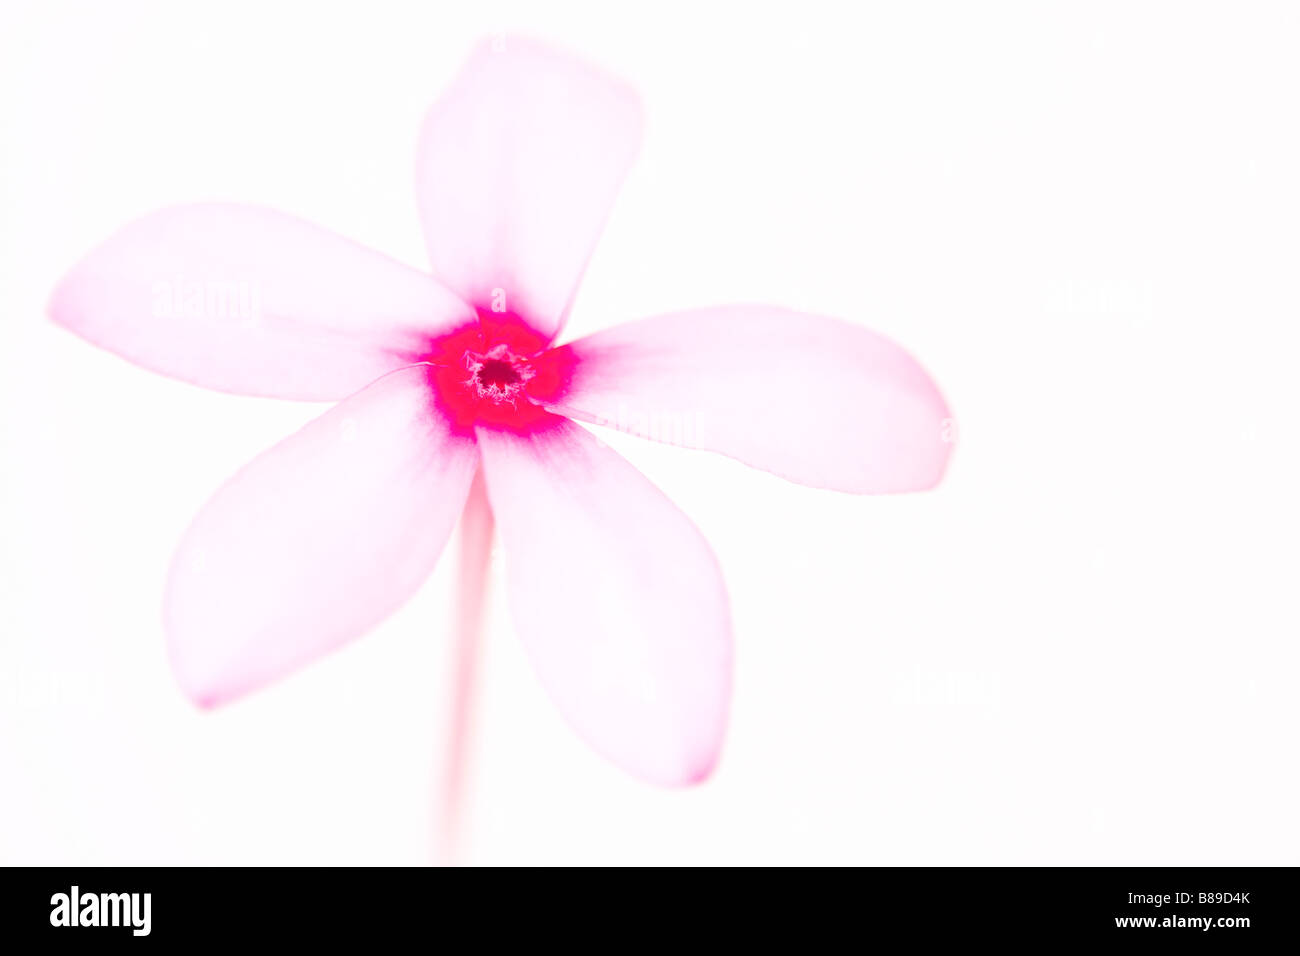 L'art abstrait de droit d'une fleur de frangipanier Plumeria rose sur un fond clair. Banque D'Images